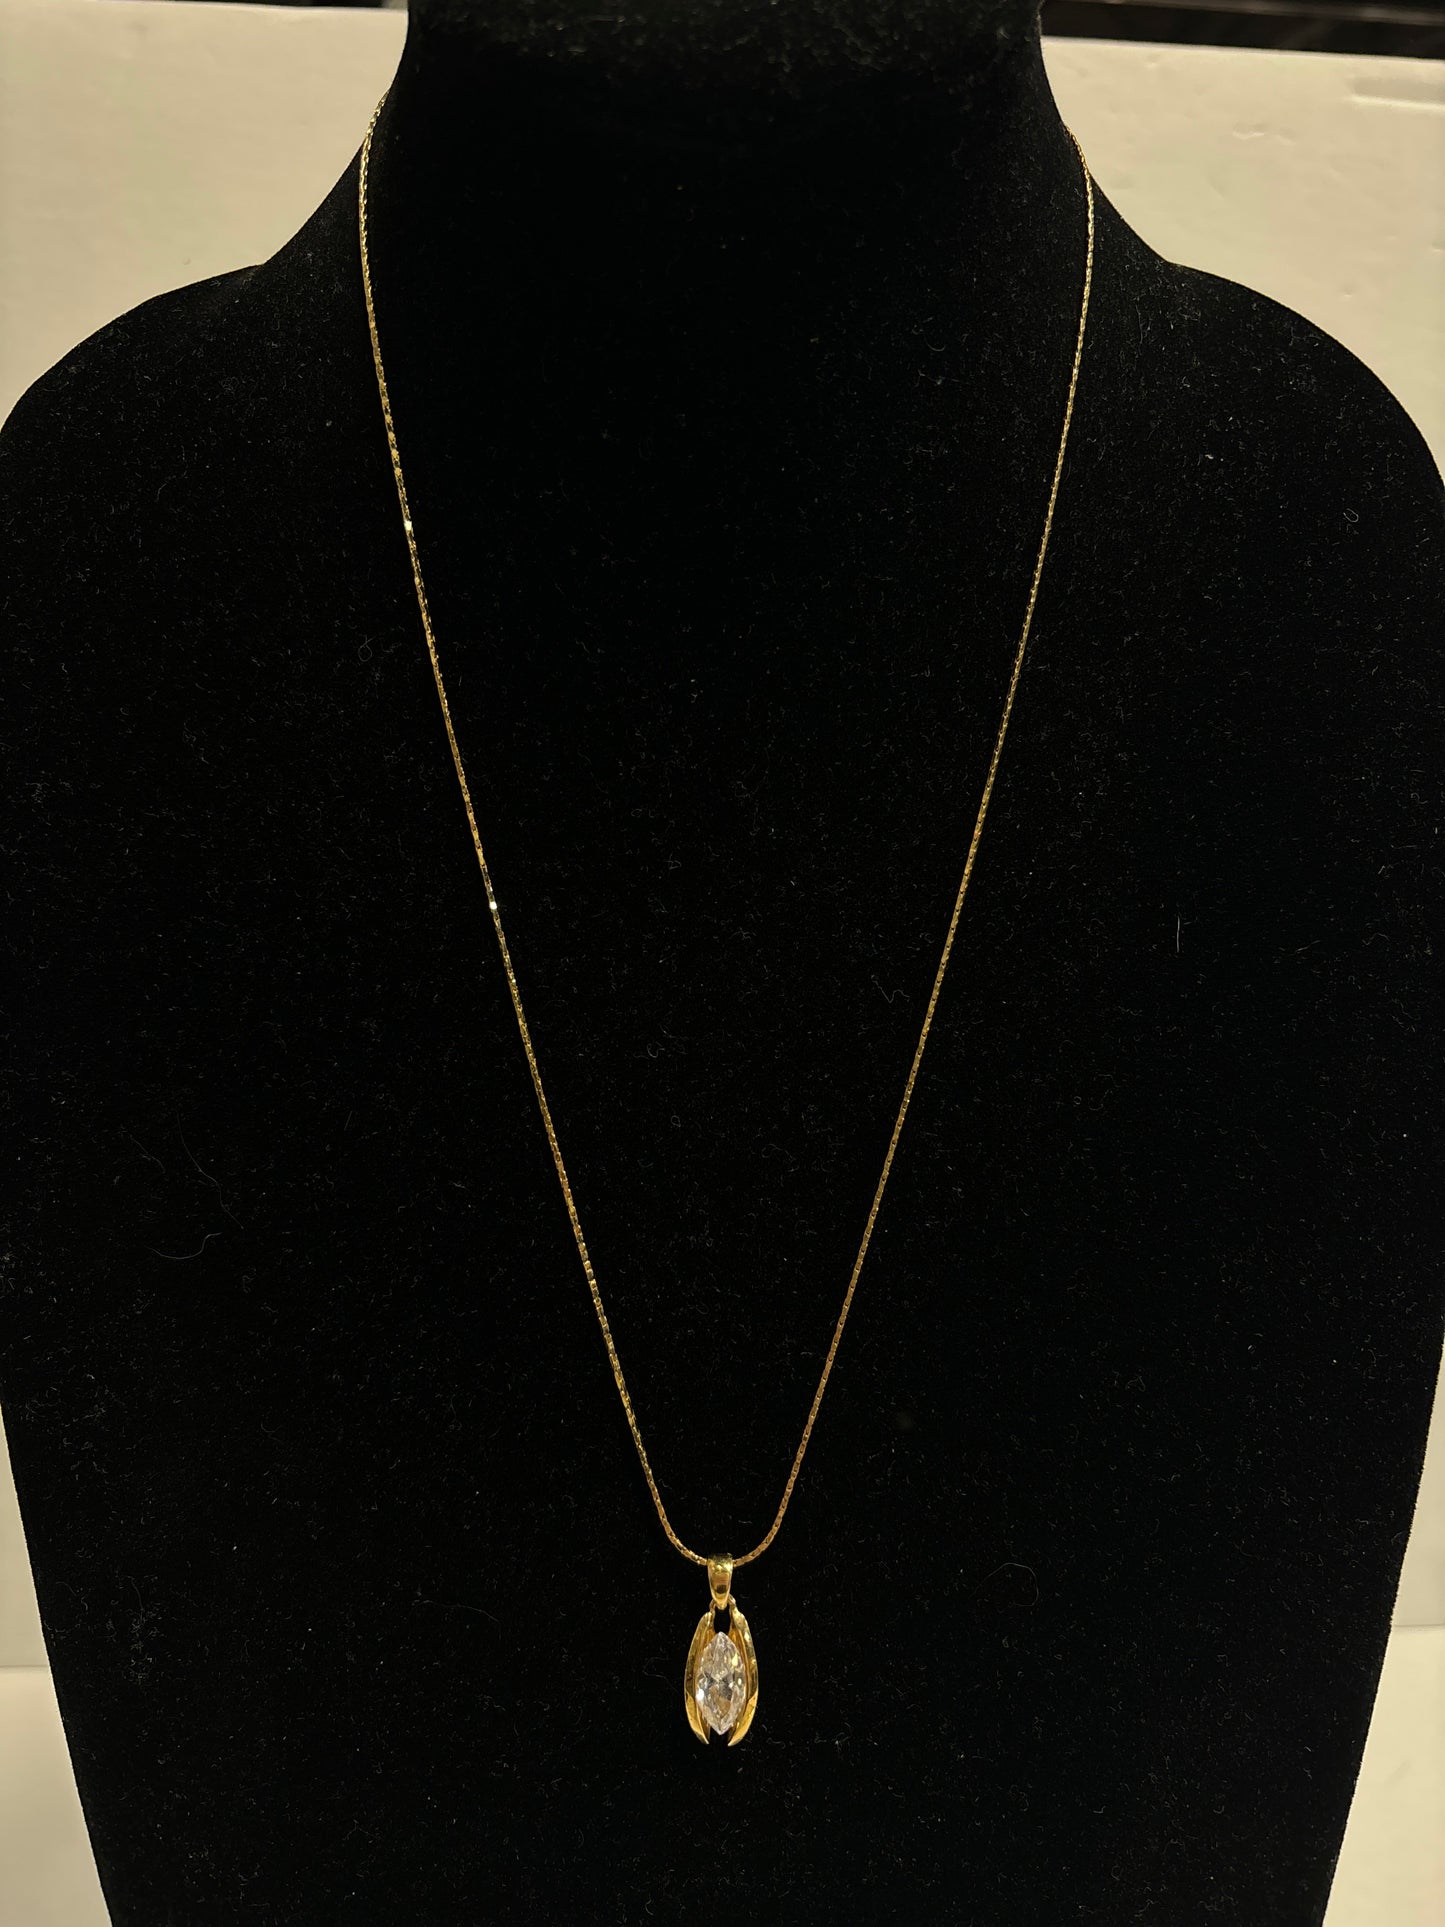 Necklace Charm By Lia Sophia Jewelry  Size: 1